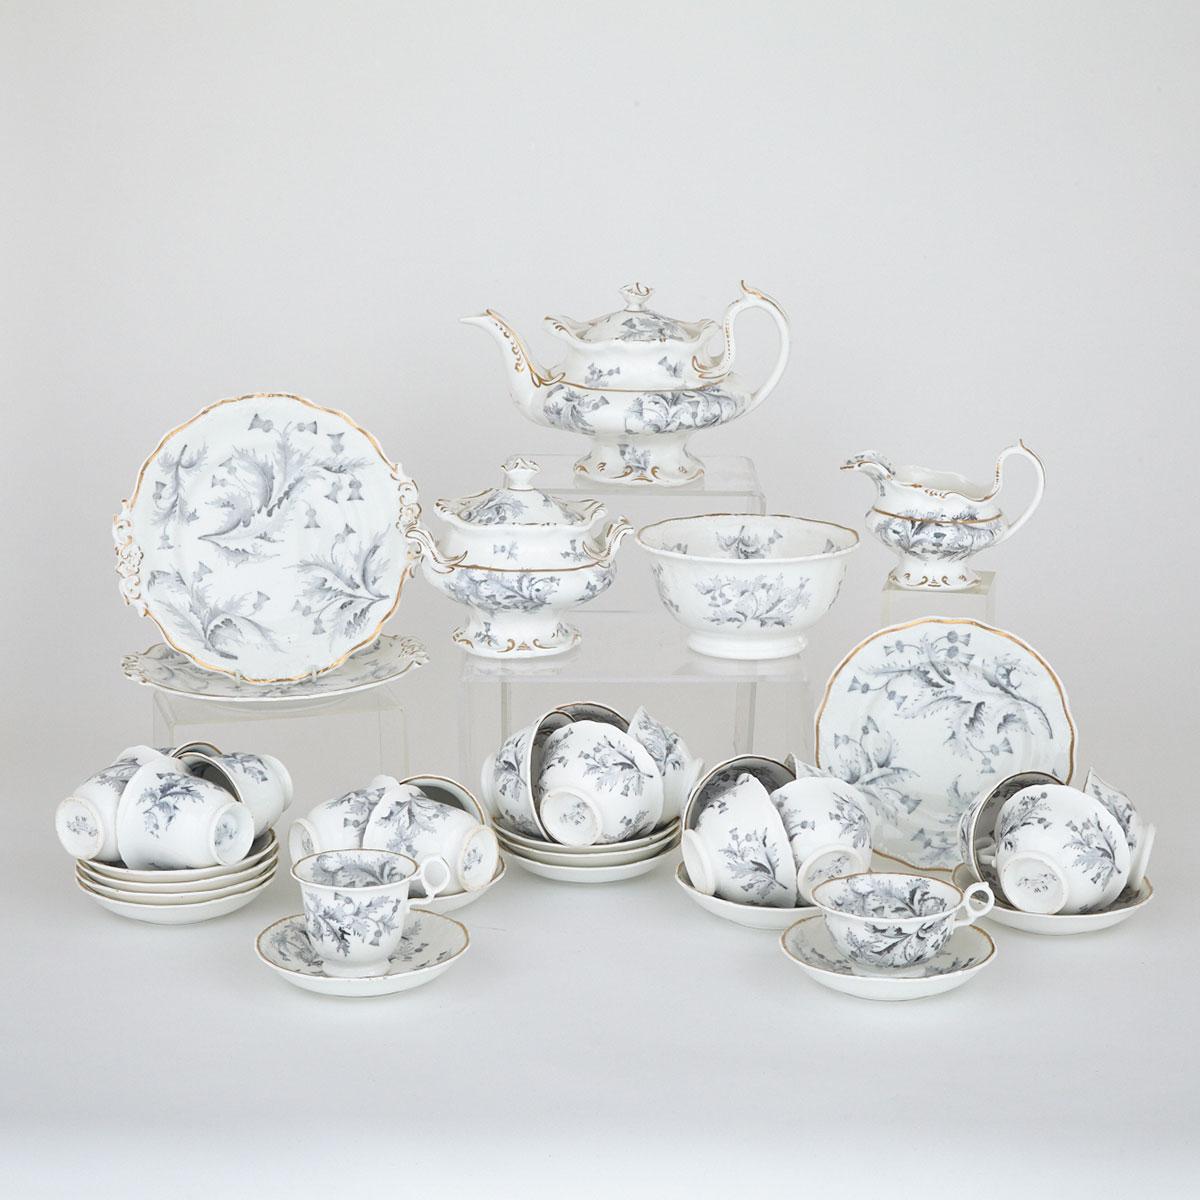 Grainger Worcester ‘Thistle’ Pattern Tea Service, c.1850-60